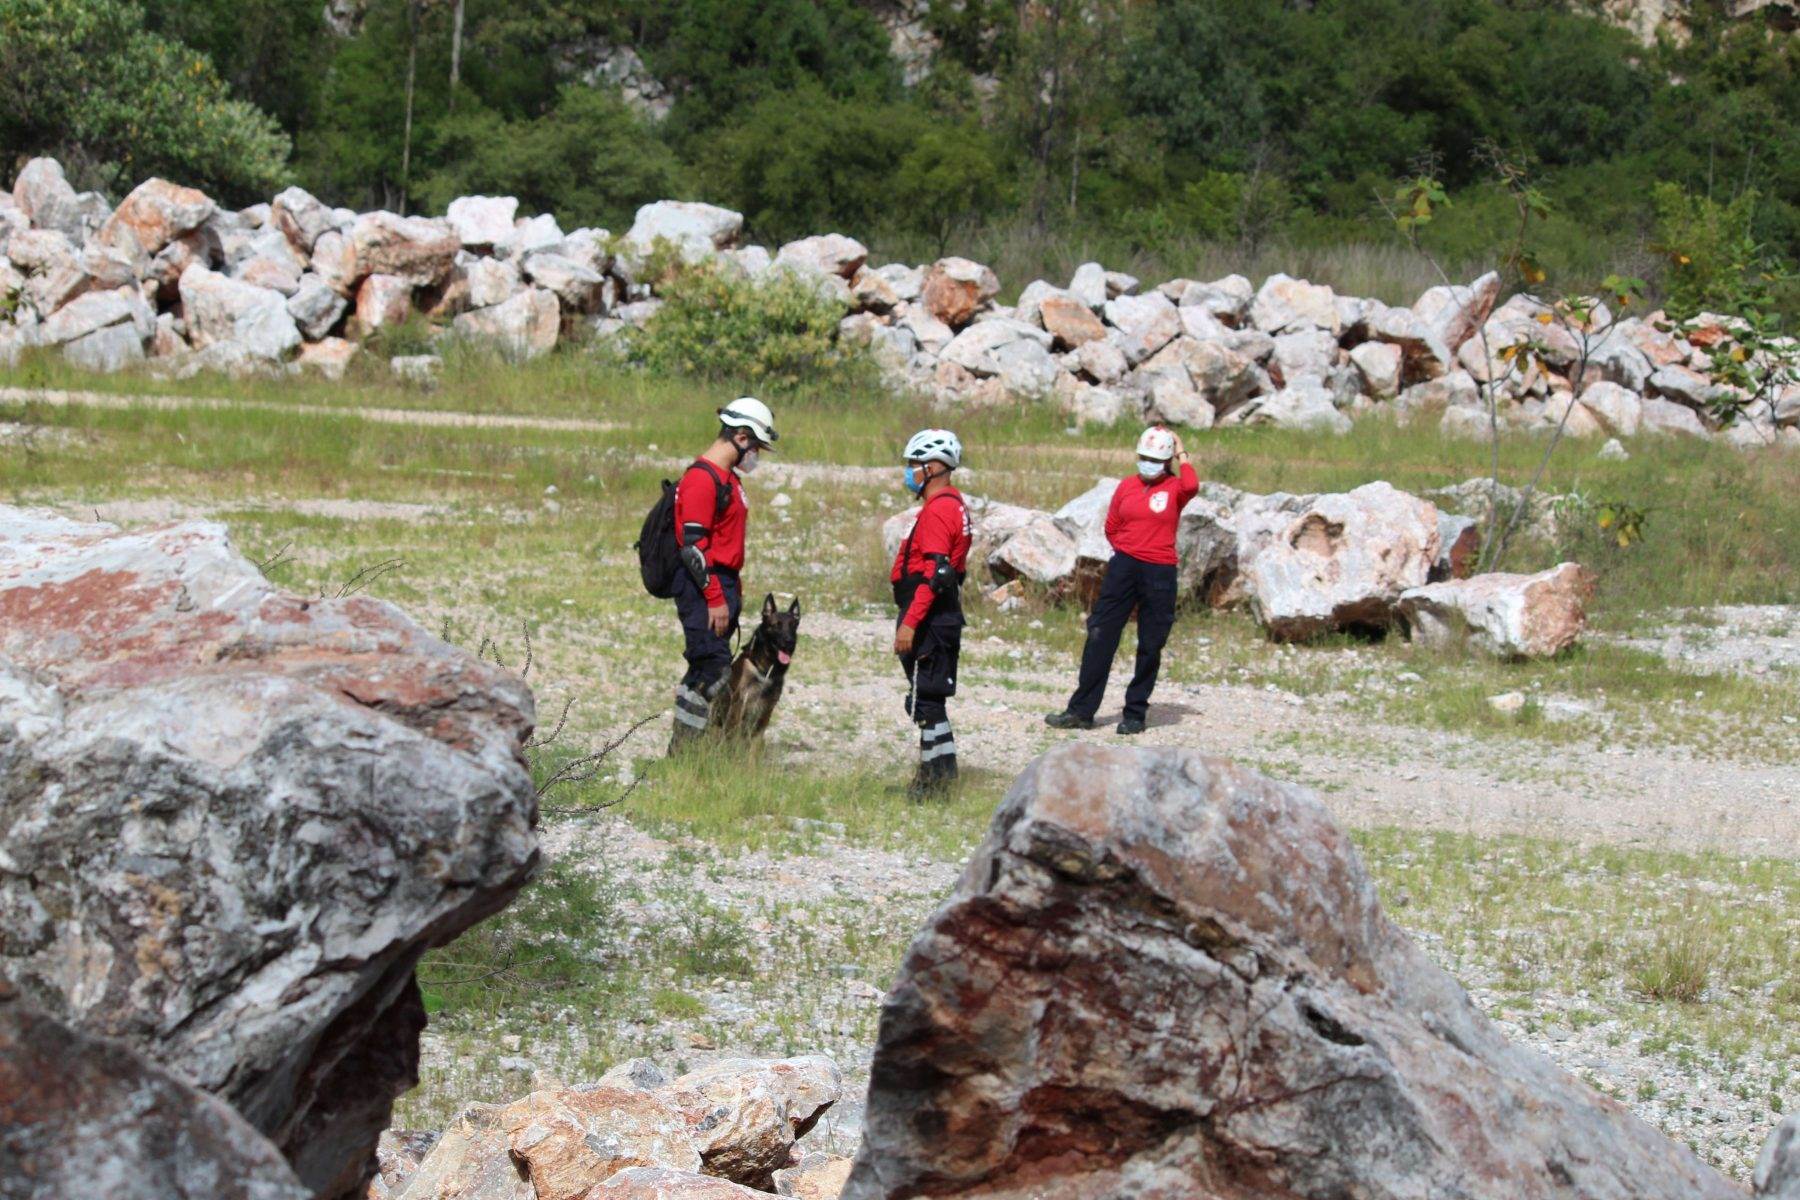 Existen distintos equipos de rescatistas en México. Algunos se especializan en rescate alpino y otros en extensiones más grandes de búsqueda.